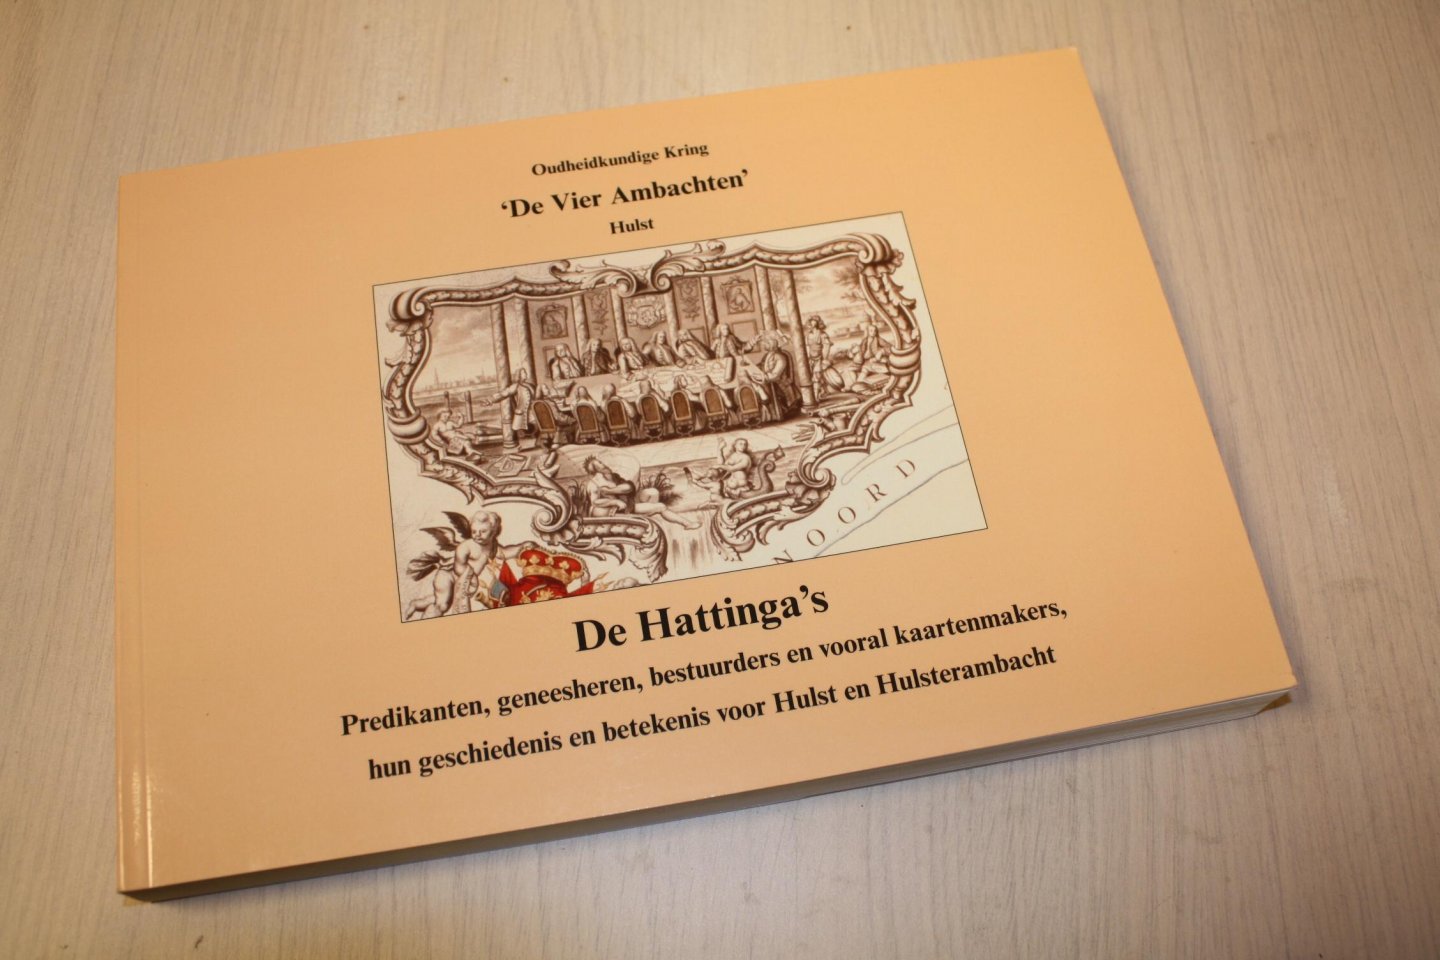 Diverse auteurs - De Hattinga's. - Predikanten, geneesheren, bestuurders en vooral kaartenmakers, hun geschiedenis en betekenis voor Hulst en Hulsterambacht. - Jaarboek 2014-2015.